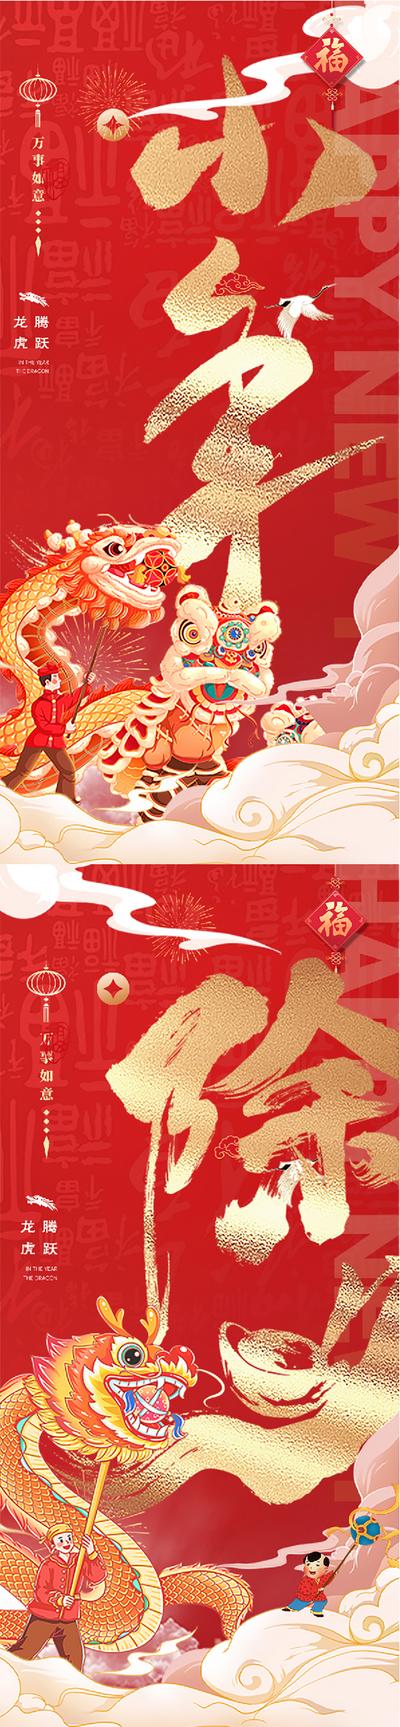 南门网 海报 中国传统节日 龙年 小年 除夕 舞狮 舞龙 插画